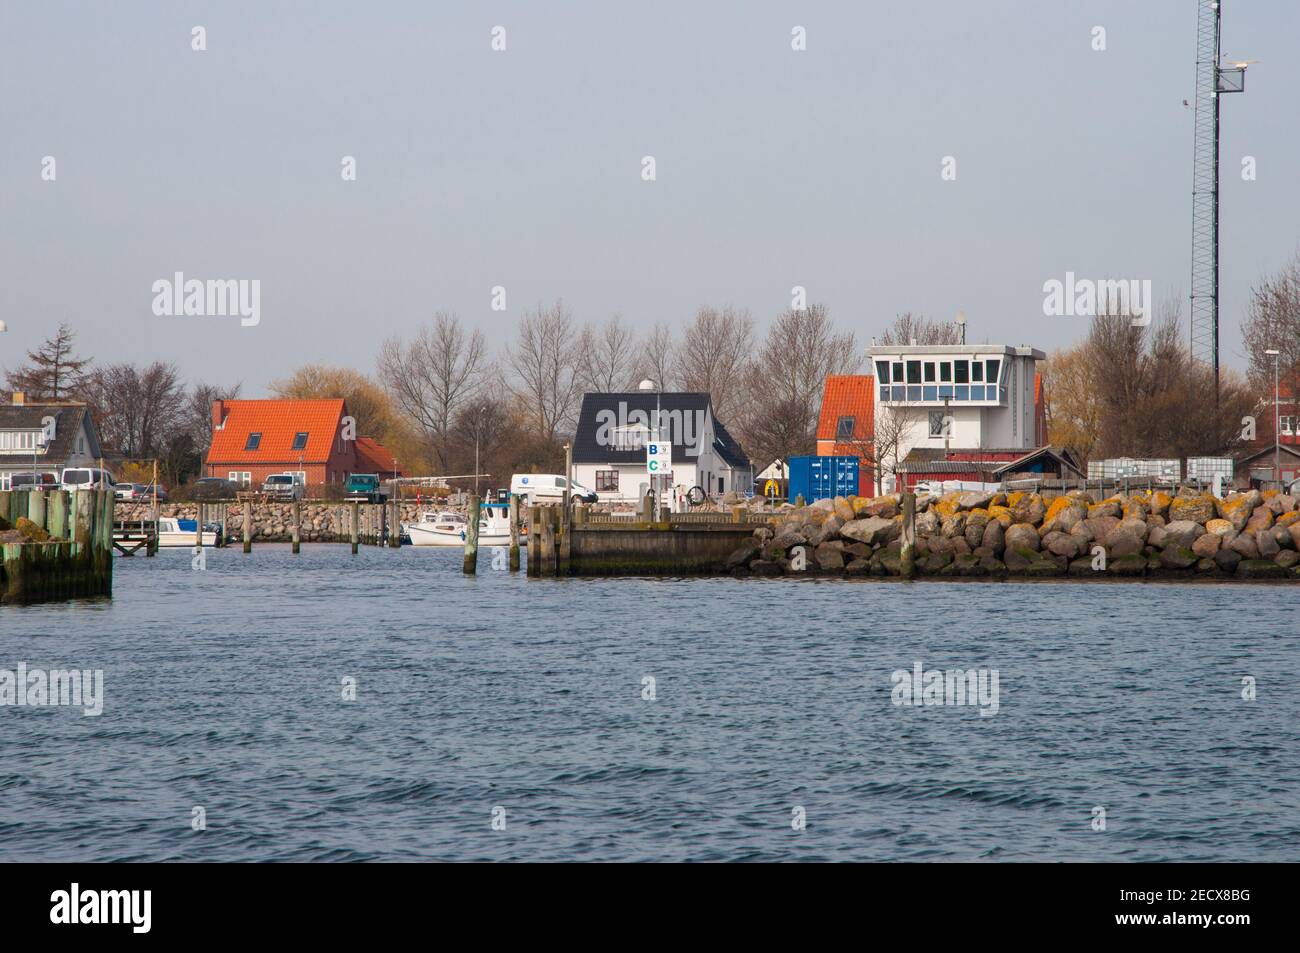 Port of Spodsbjerg on Langeland island in Denmark Stock Photo